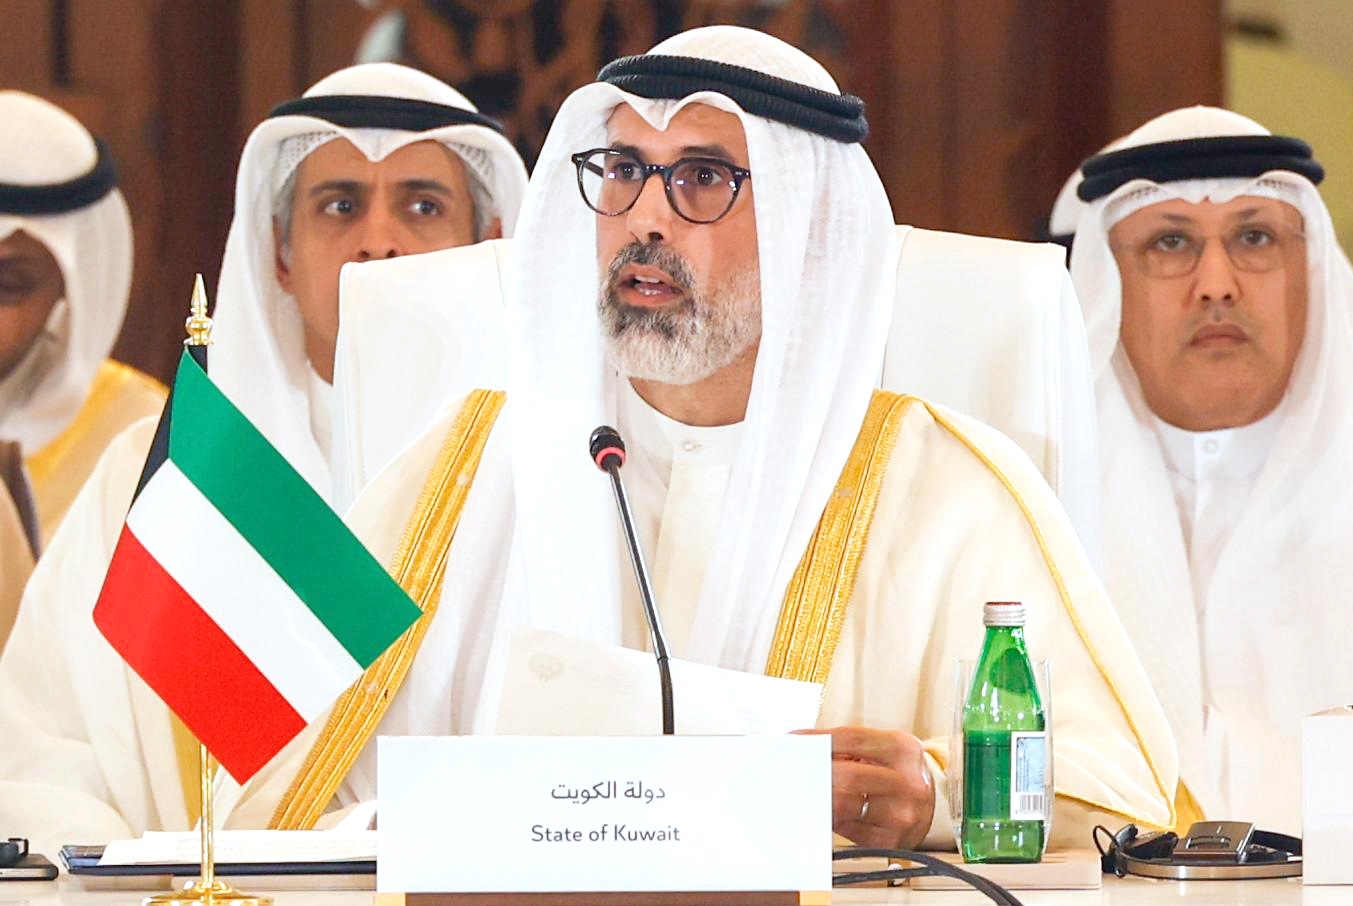 Kuwait's Deputy Foreign Minister Ambassador Sheikh Jarrah Jaber Al-Ahmad Al-Sabah